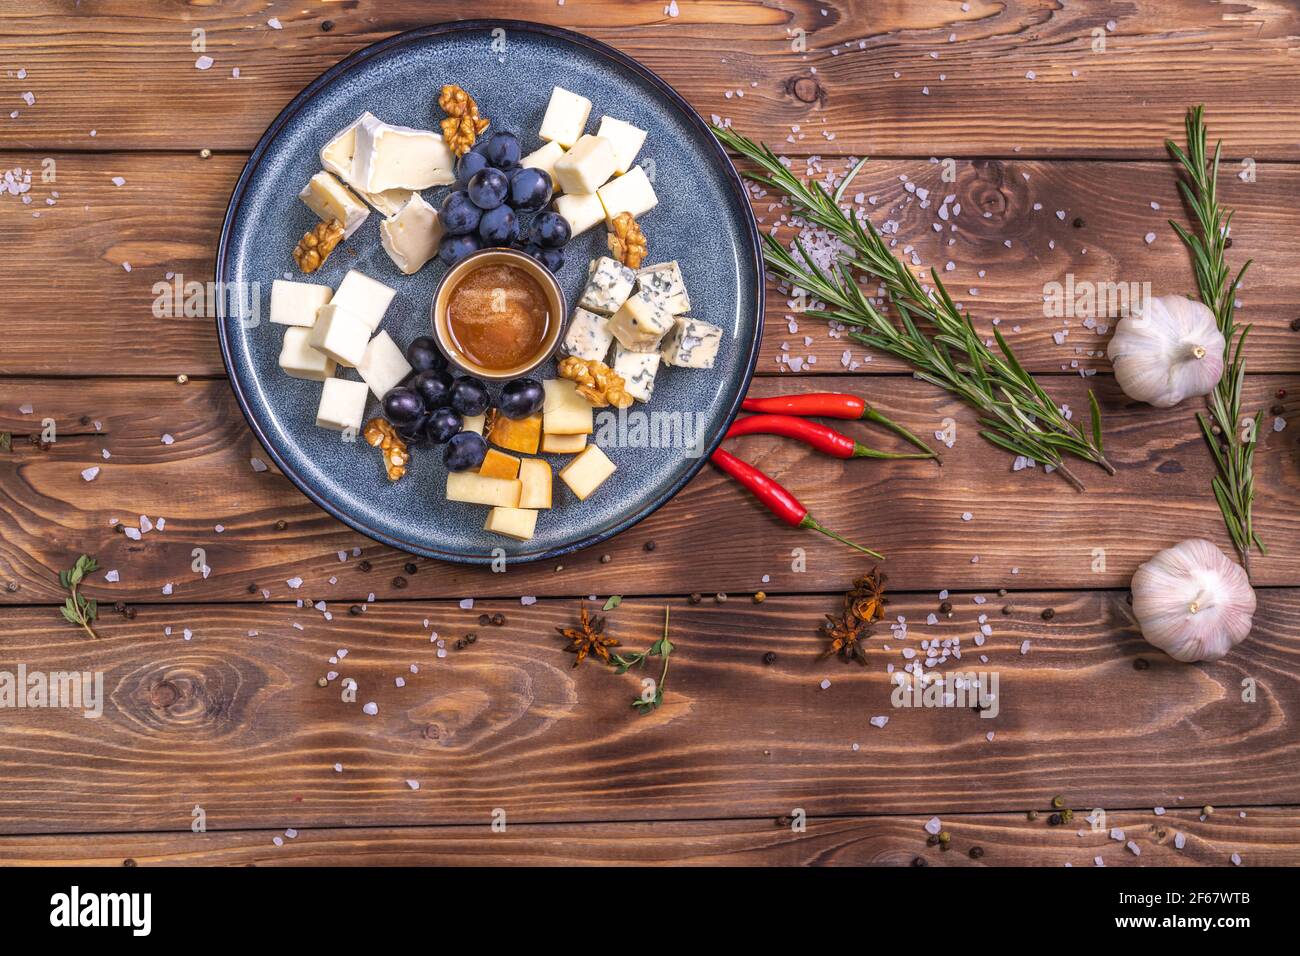 Un piatto con formaggio a fette, miele, uva su fondo ligneo, decorato con spezie, rosmarino, aglio. Servizio ristorante. Foto Stock